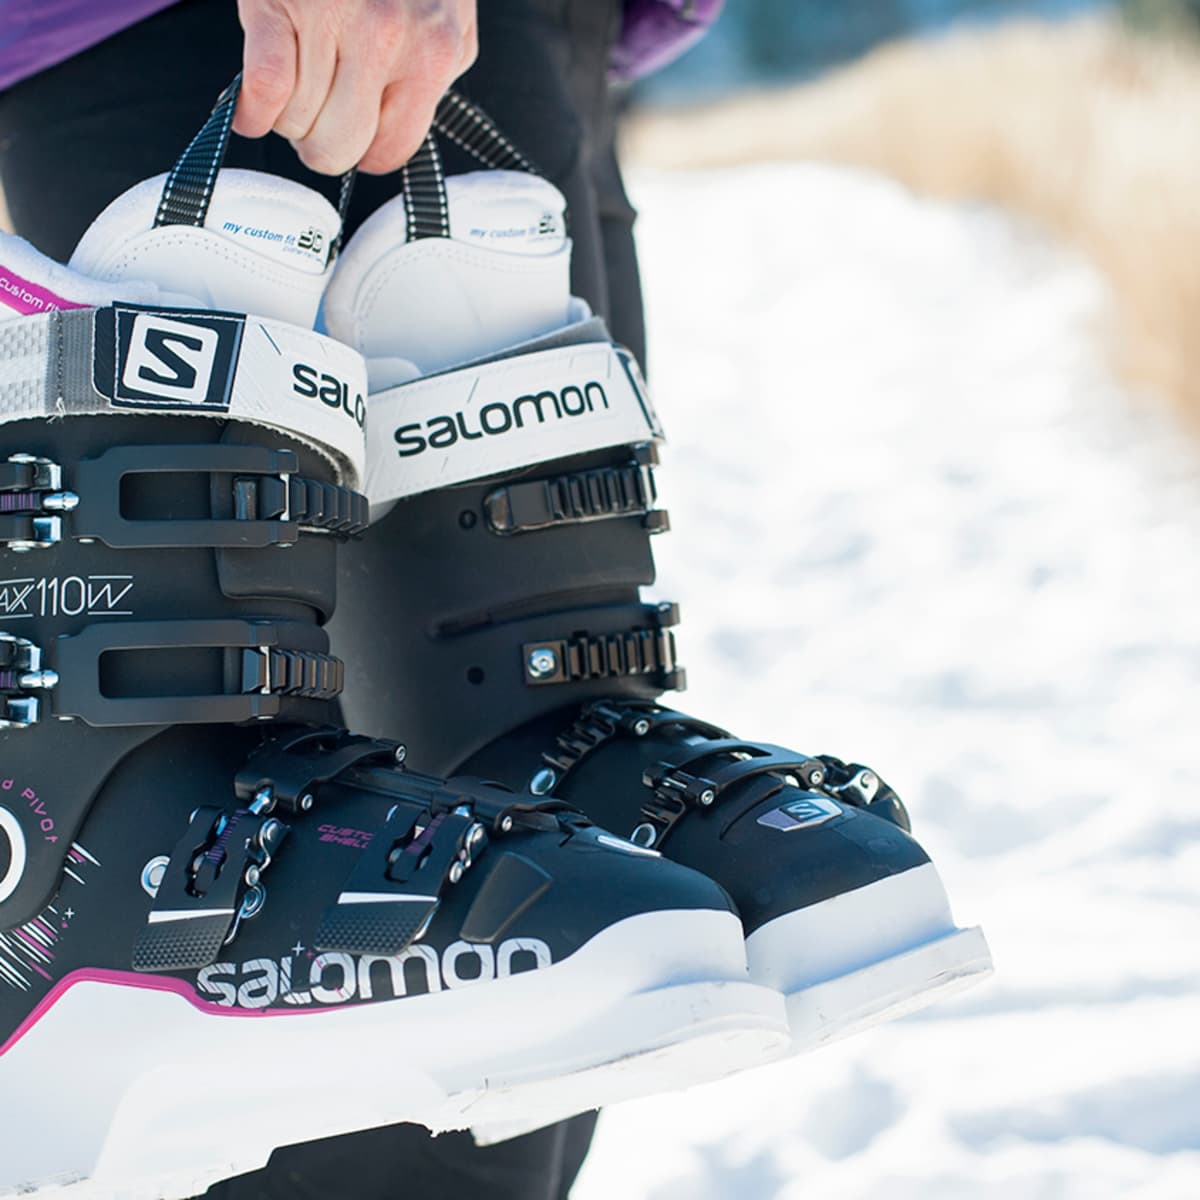 Probleem Bedenken raket These Ski Boots Mean Business - Powder